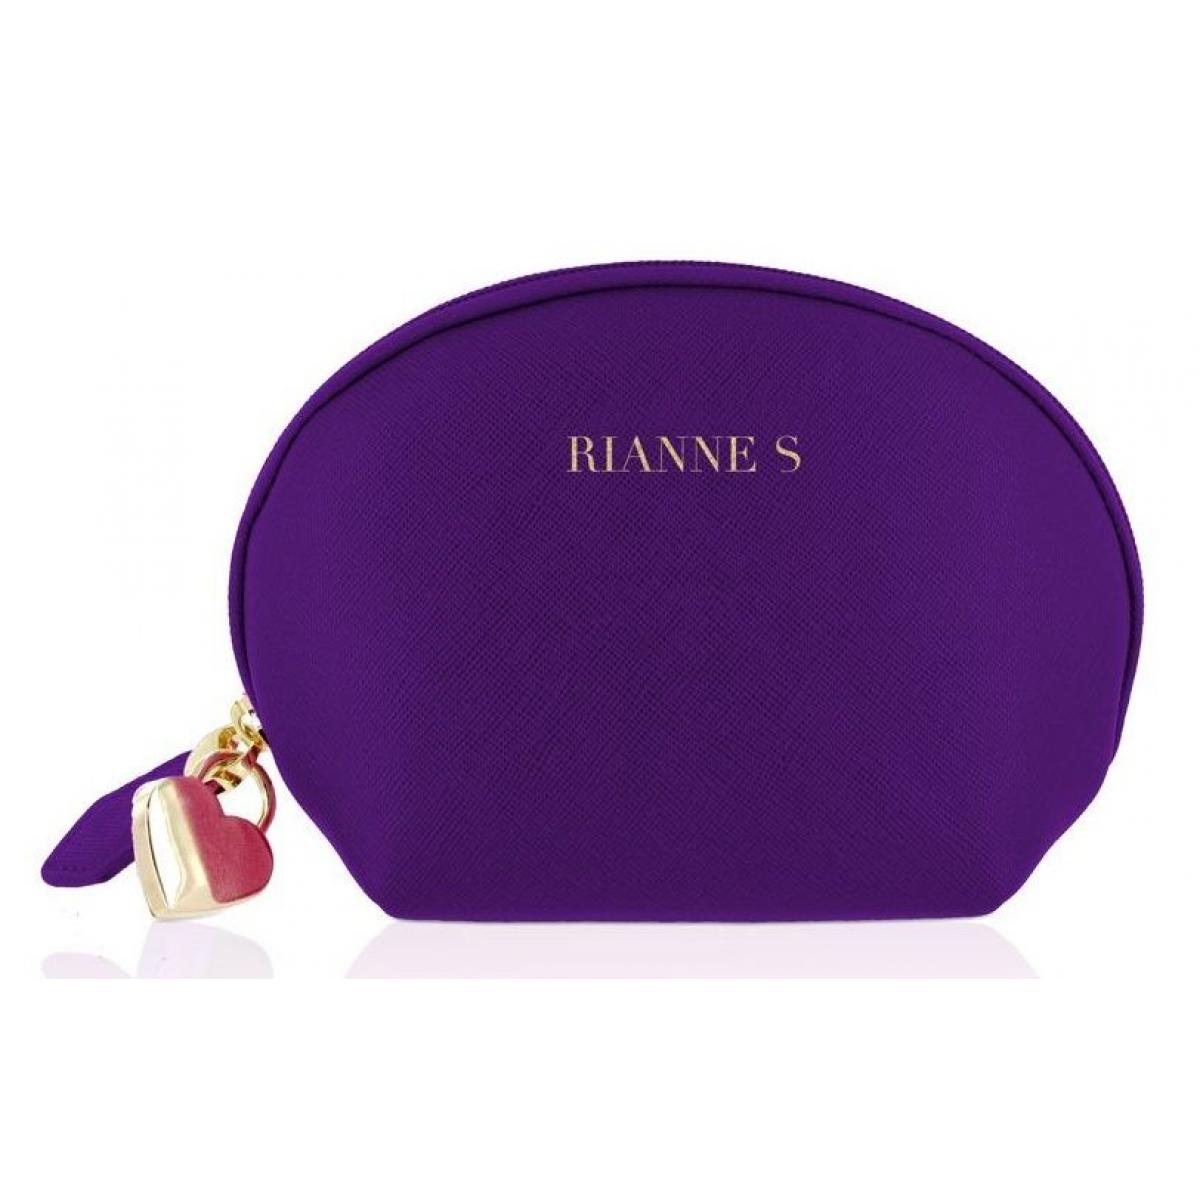 Фиолетовый вибратор с ушками Bunny Bliss - 11 см.